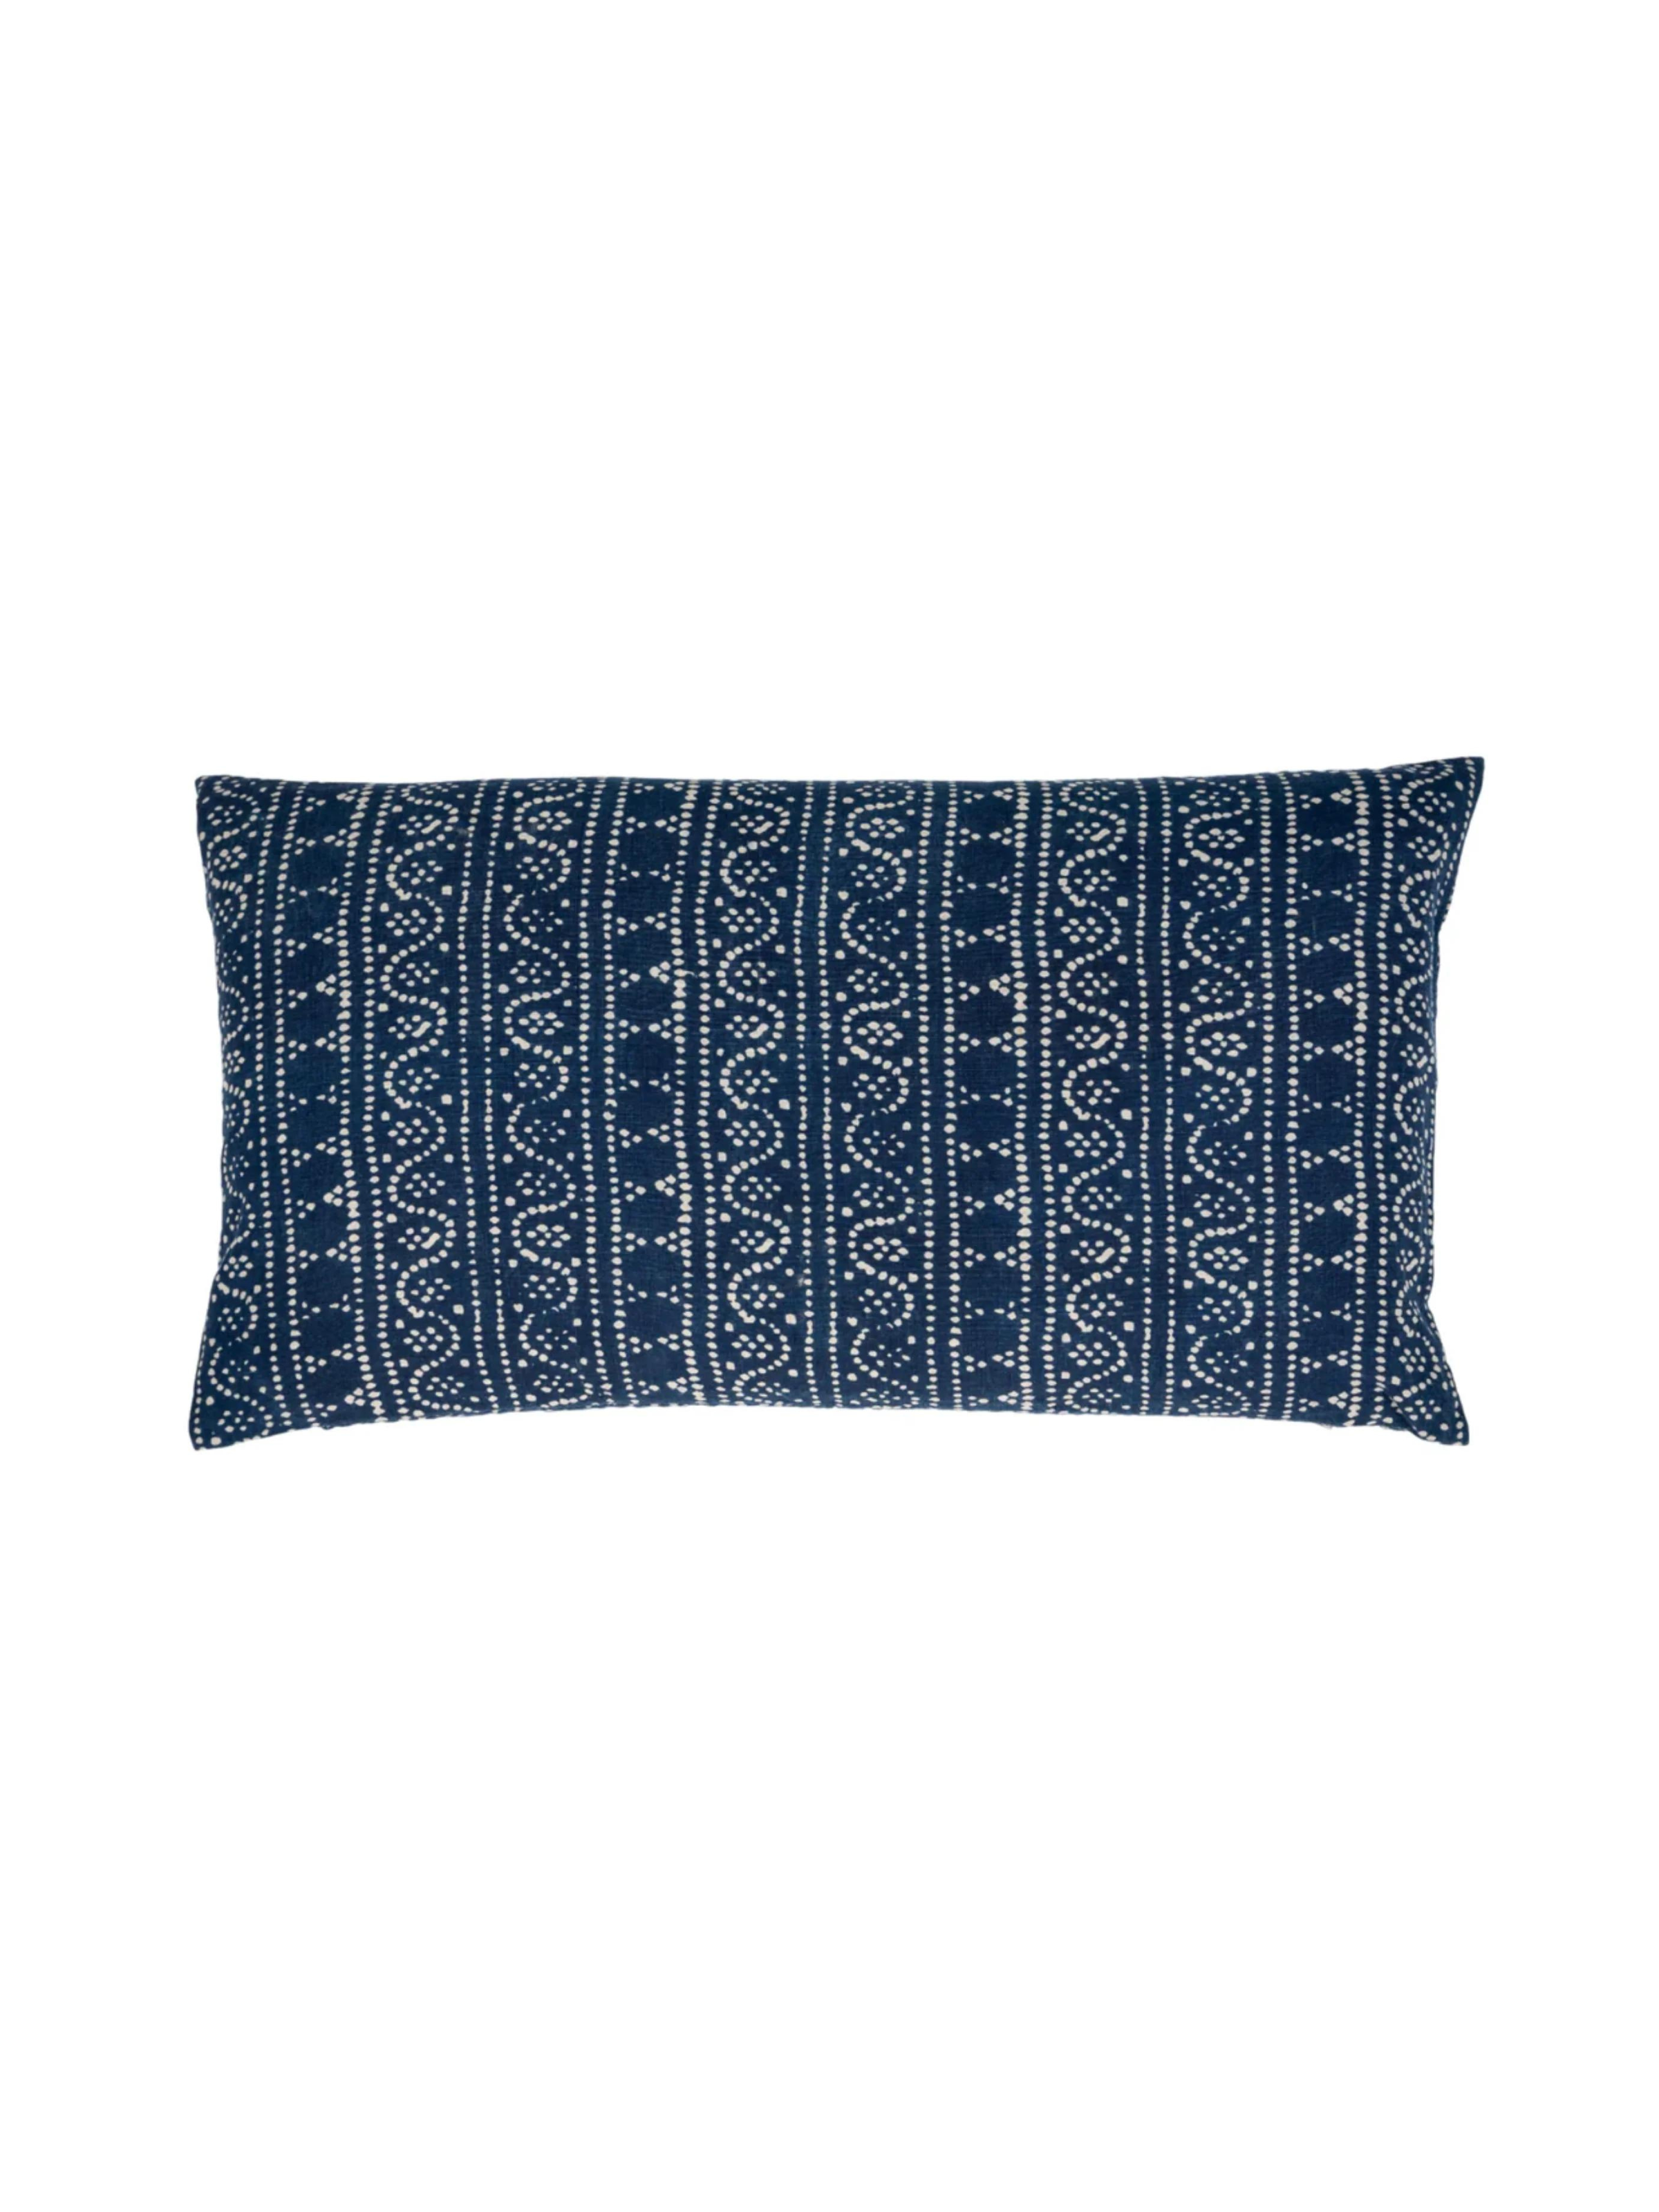 Sumatra Indigo Lumbar Pillow Cover